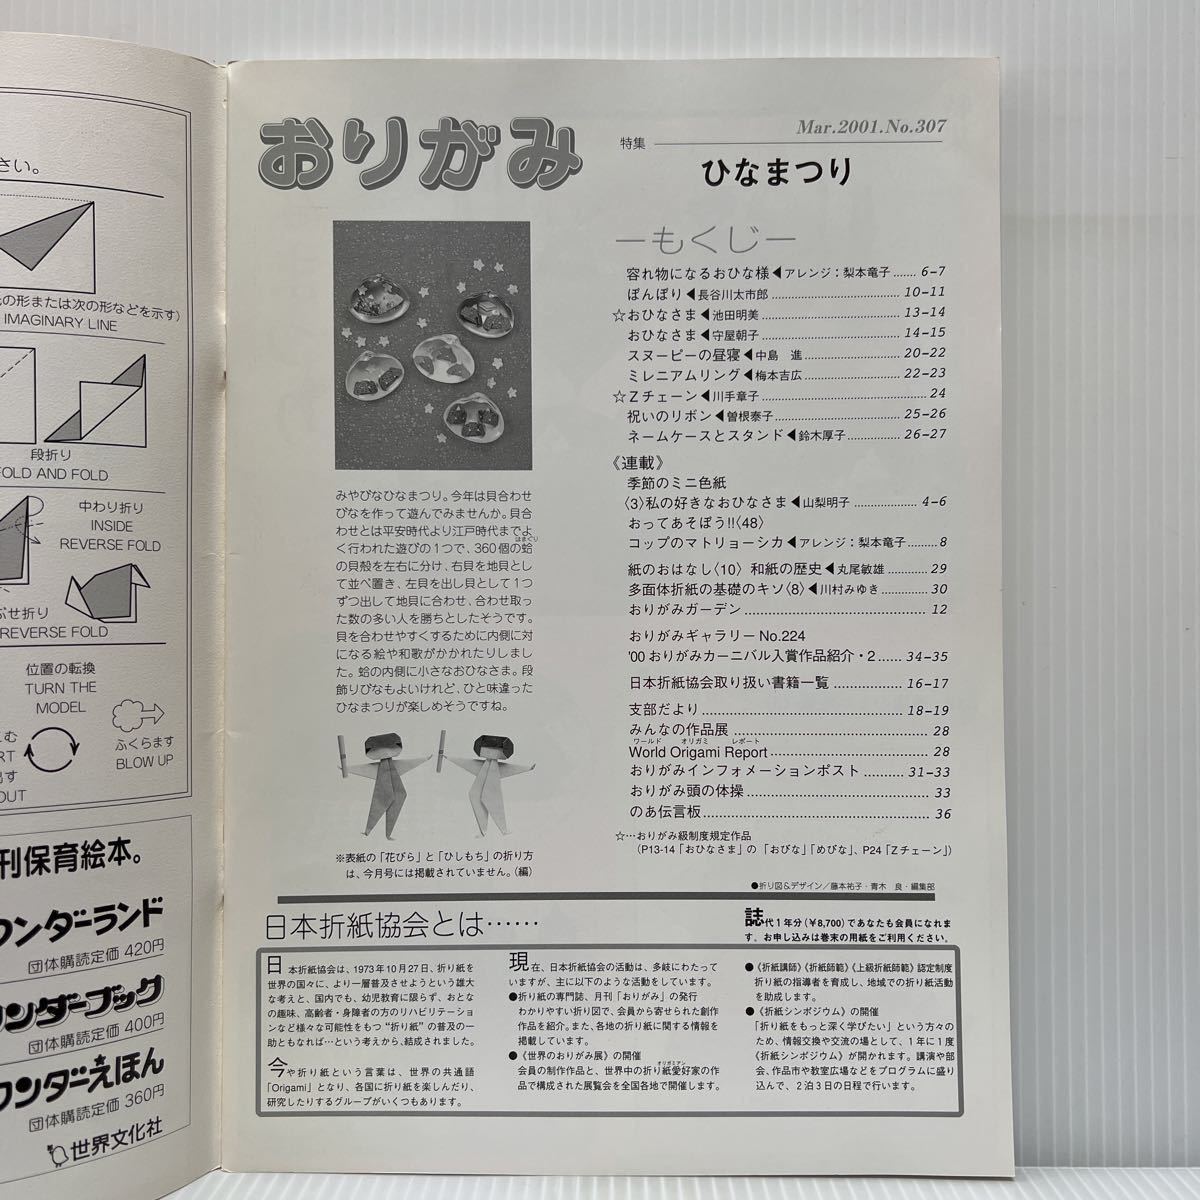  ежемесячный оригами 2001 год 3 месяц номер No.307*...../..../...../ имя кейс . подставка / праздник .. лента /. бумага / construction / Япония . бумага ассоциация 